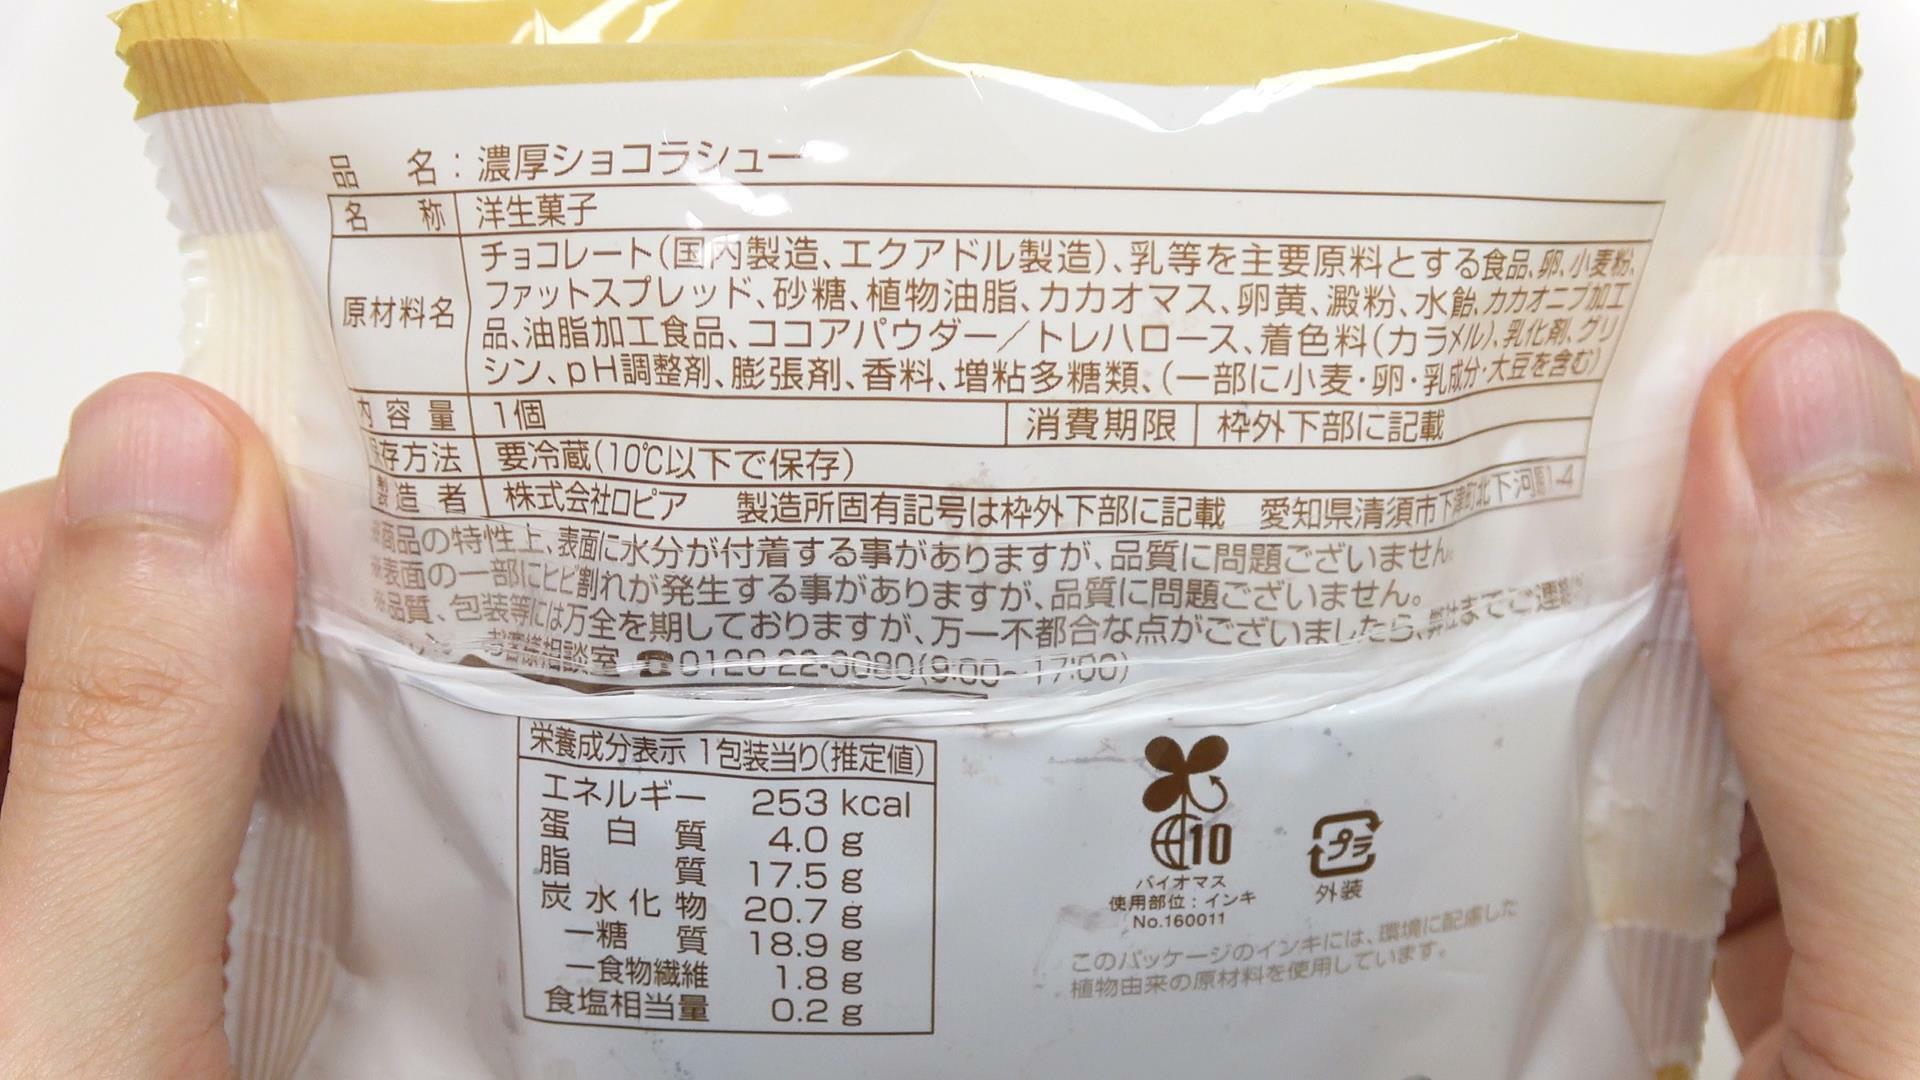 ファミマ新発売の濃厚ショコラシューの原材料名と栄養成分表示